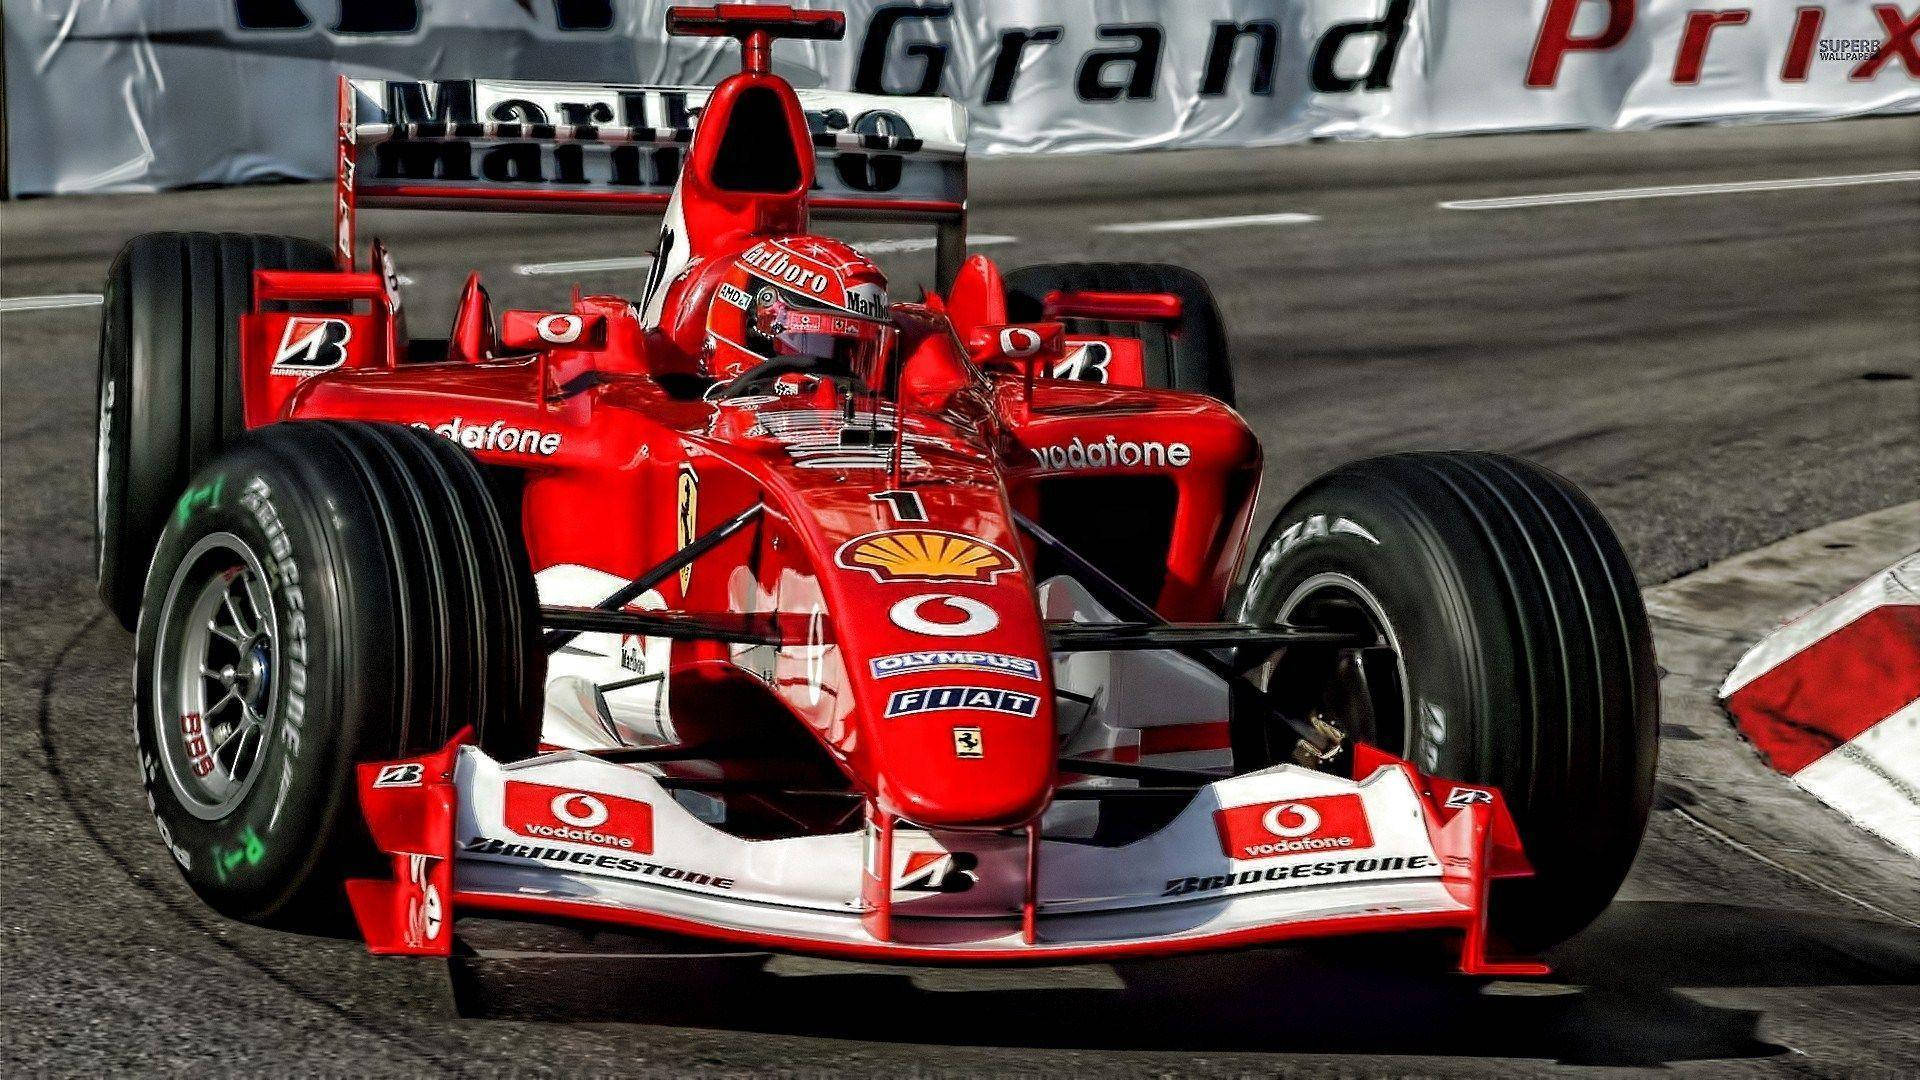 Grand Prix Michael Schumacher Background